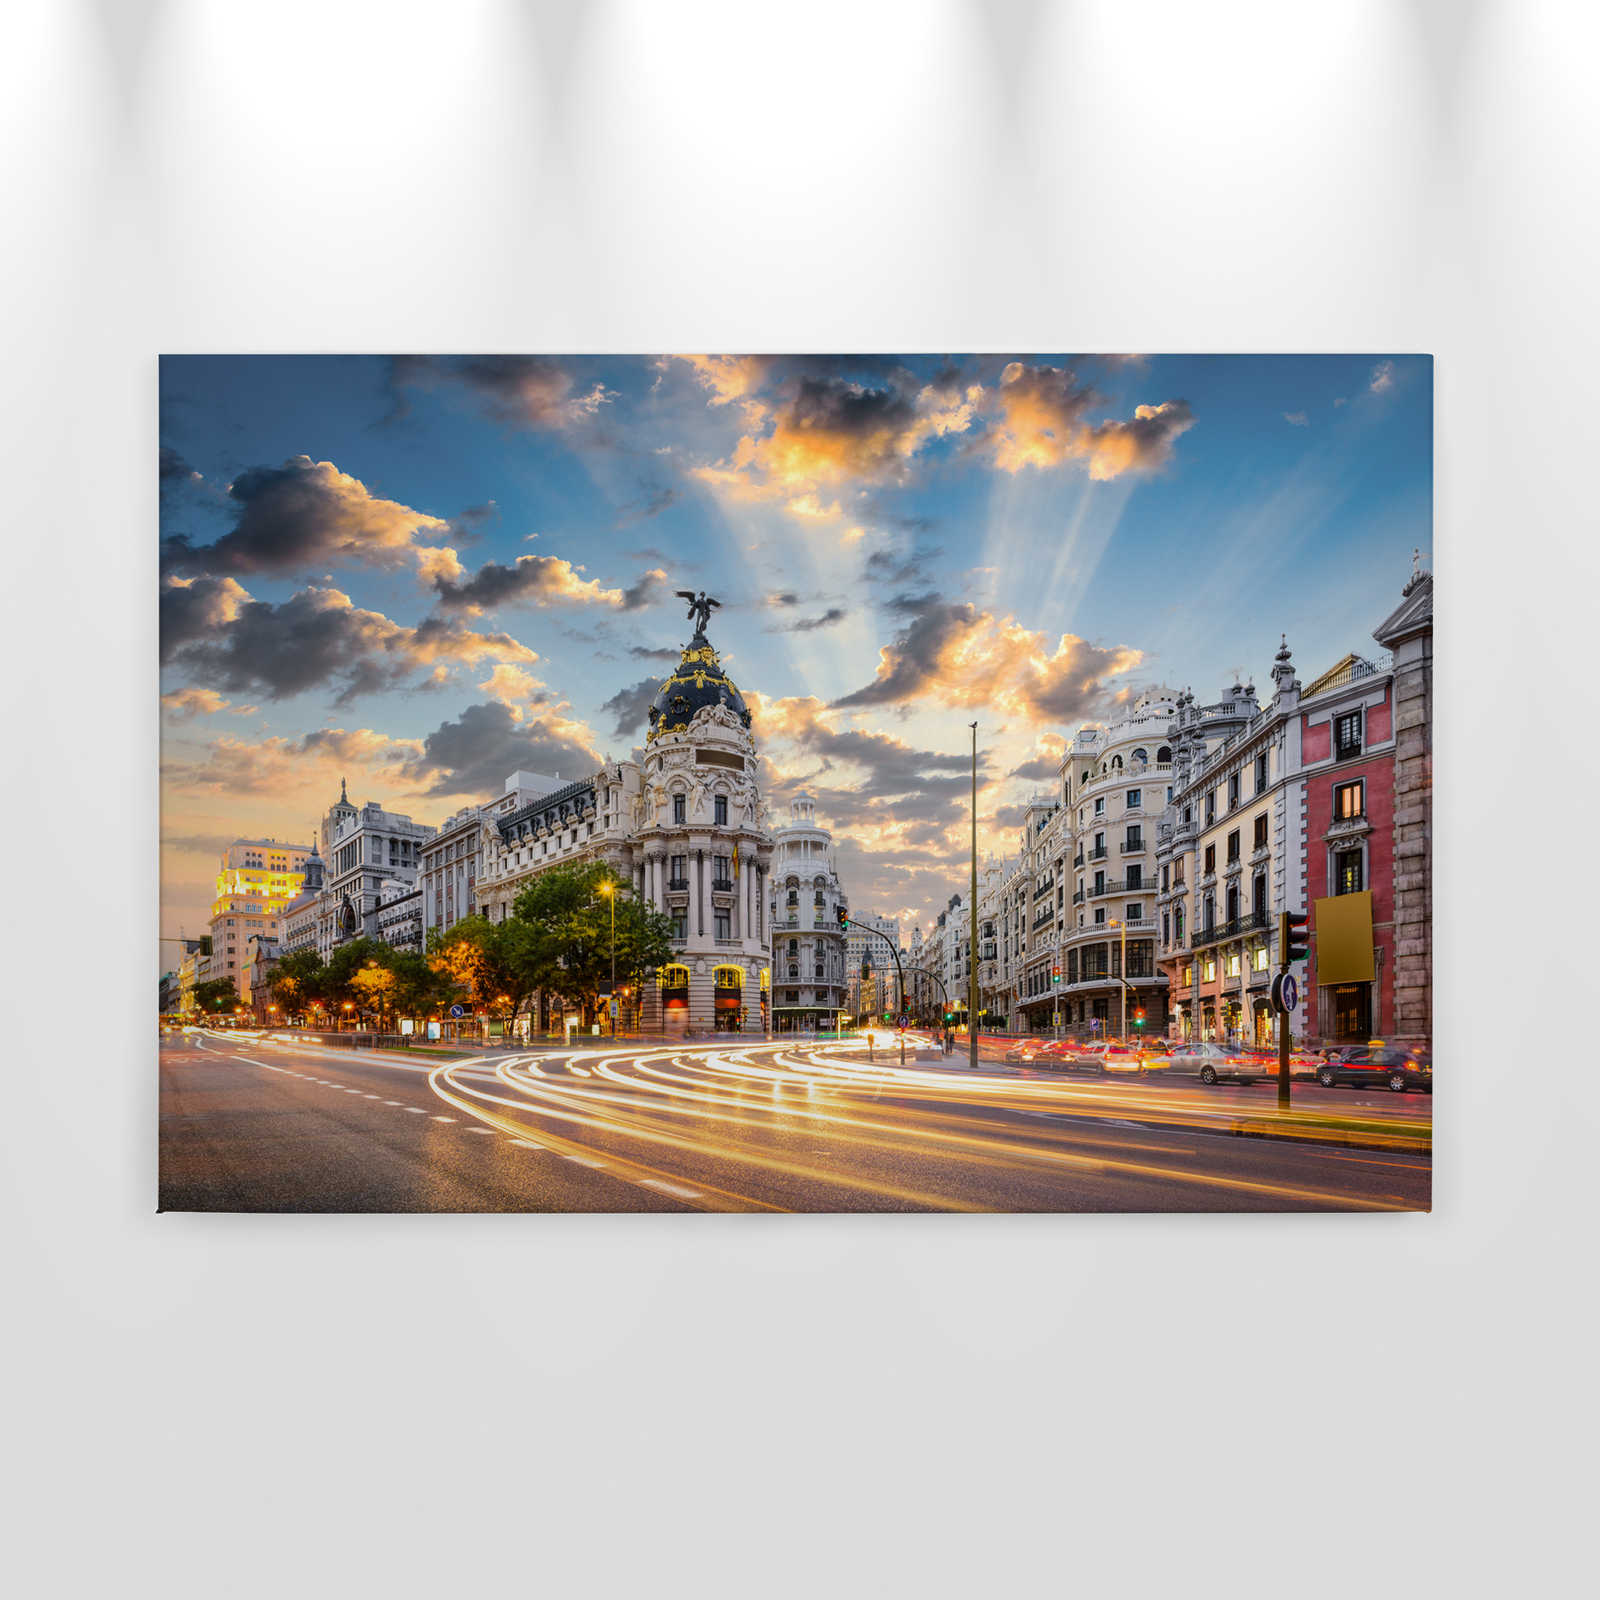             Canvas met de straten van Madrid in de ochtend - 0.90 m x 0.60 m
        